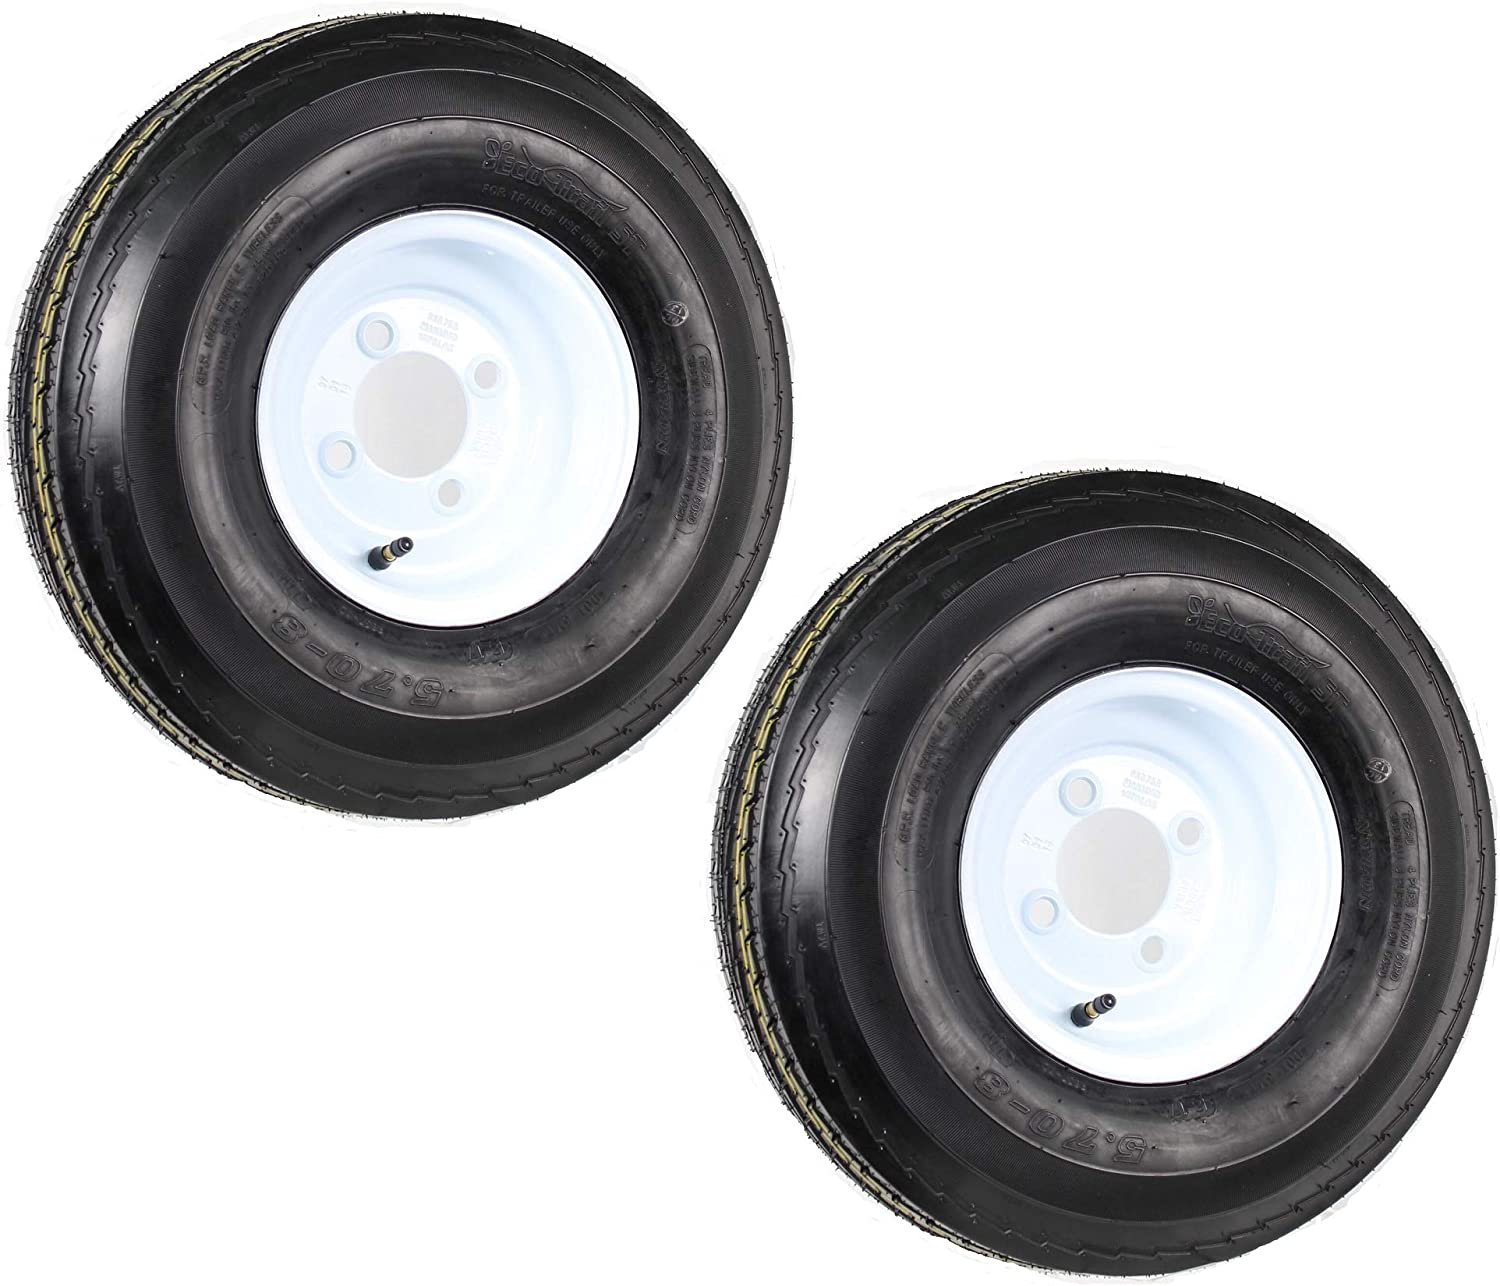 2-Pack Trailer Tire On Rim 5.70-8 570-8 5.70 X 8 8 in. B 4 Lug Bolt Wheel White